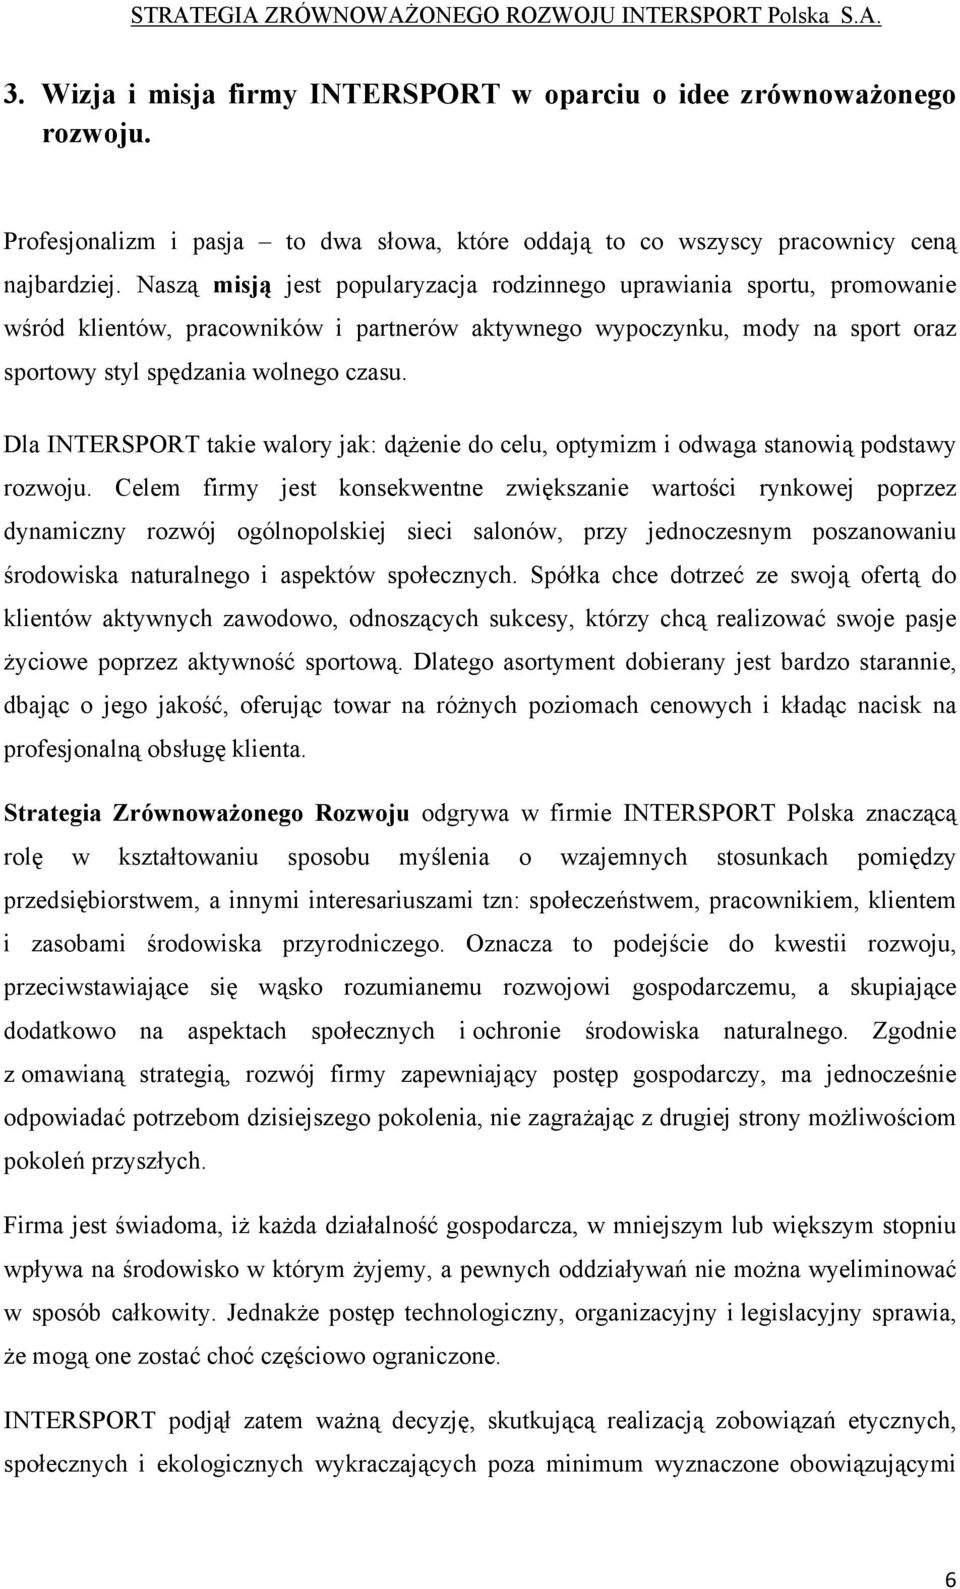 STRATEGIA ZRÓWNOWAŻONEGO ROZWOJU INTERSPORT Polska S.A. - PDF Free Download